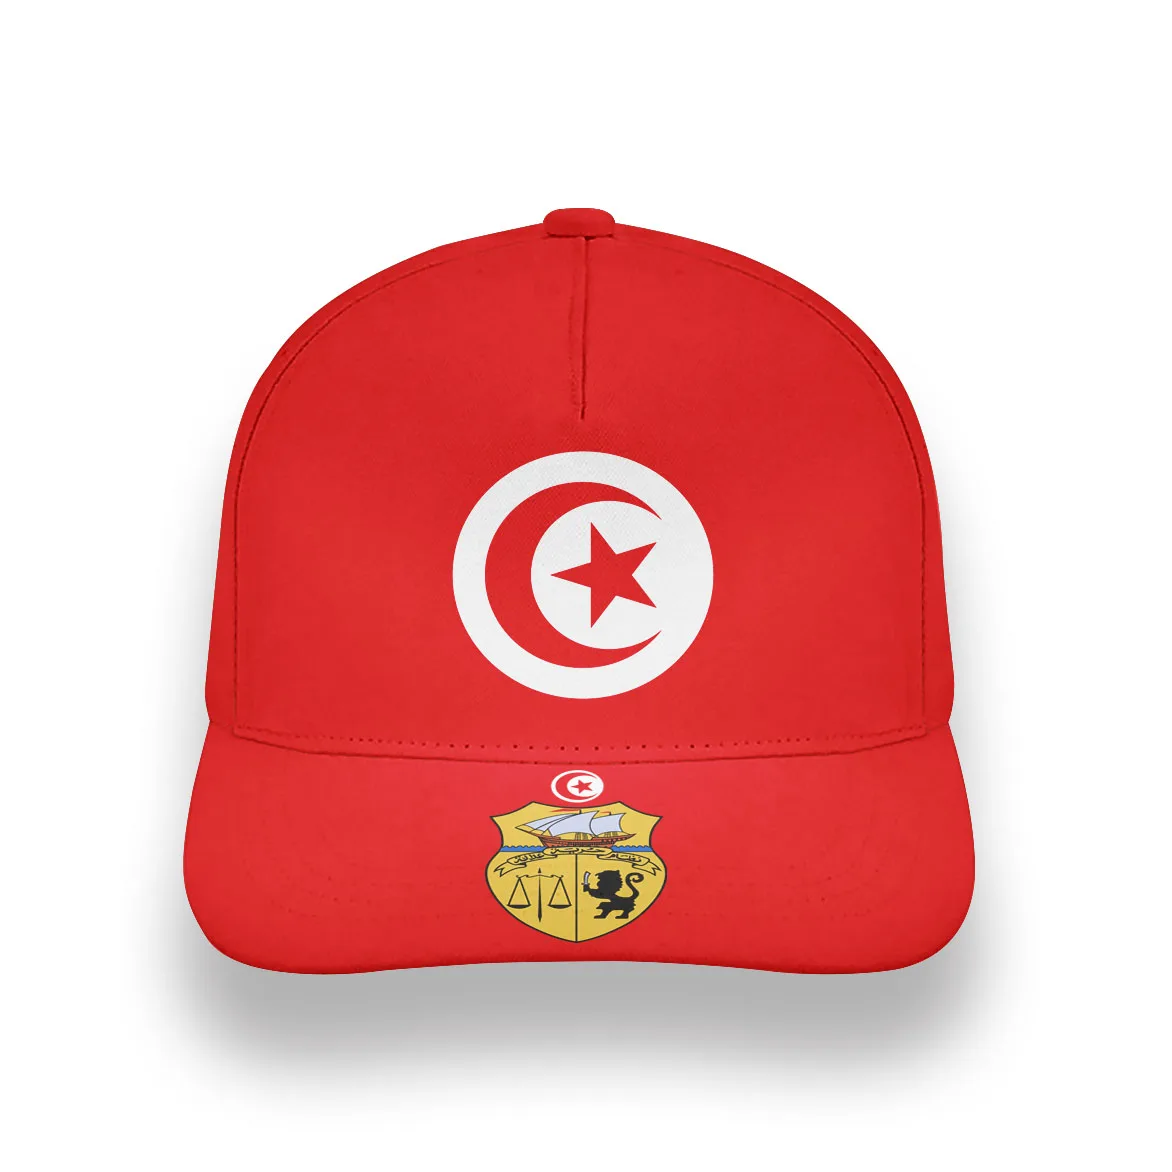 TUNUS gençlik dıy ücretsiz özel ad numarası tun şapka ulusal bayrak tunisie tn islam arapça arap tunus baskı fotoğraf beyzbol şapkası 5